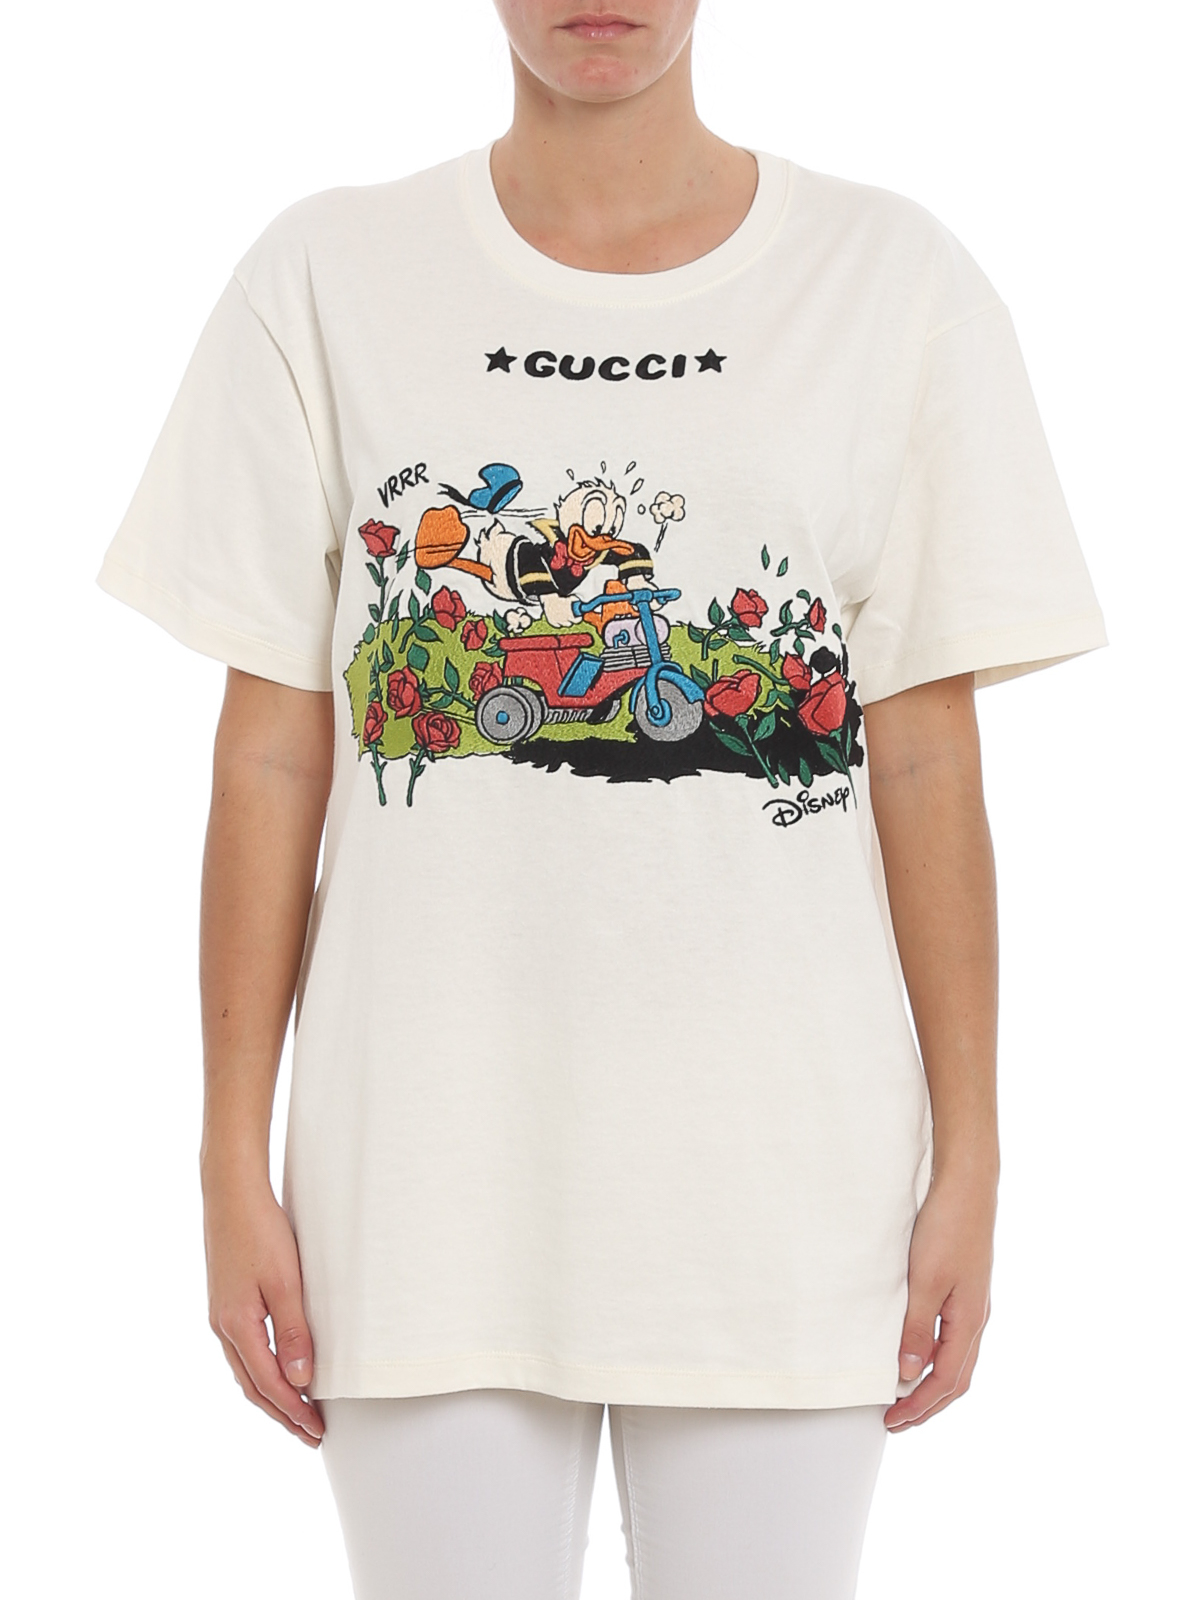 Tシャツ Gucci - Tシャツ - Disney X Gucci - 615044XJDBI9088